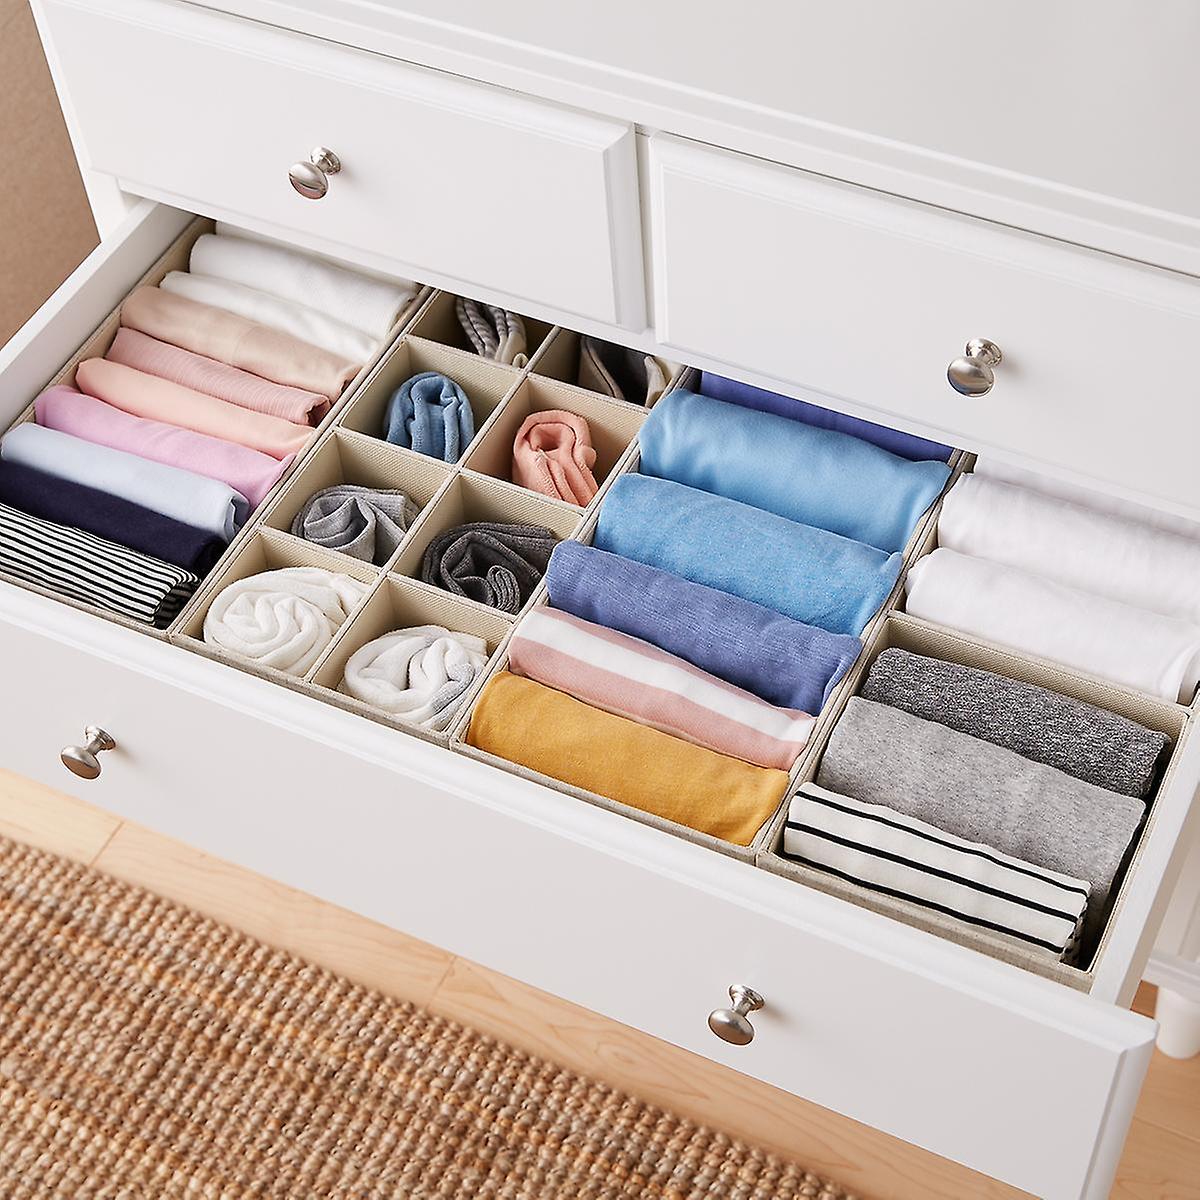 Chuyên gia nội thất mách bạn 5 cách giúp làm mới tủ quần áo của bạn - Ảnh 3.